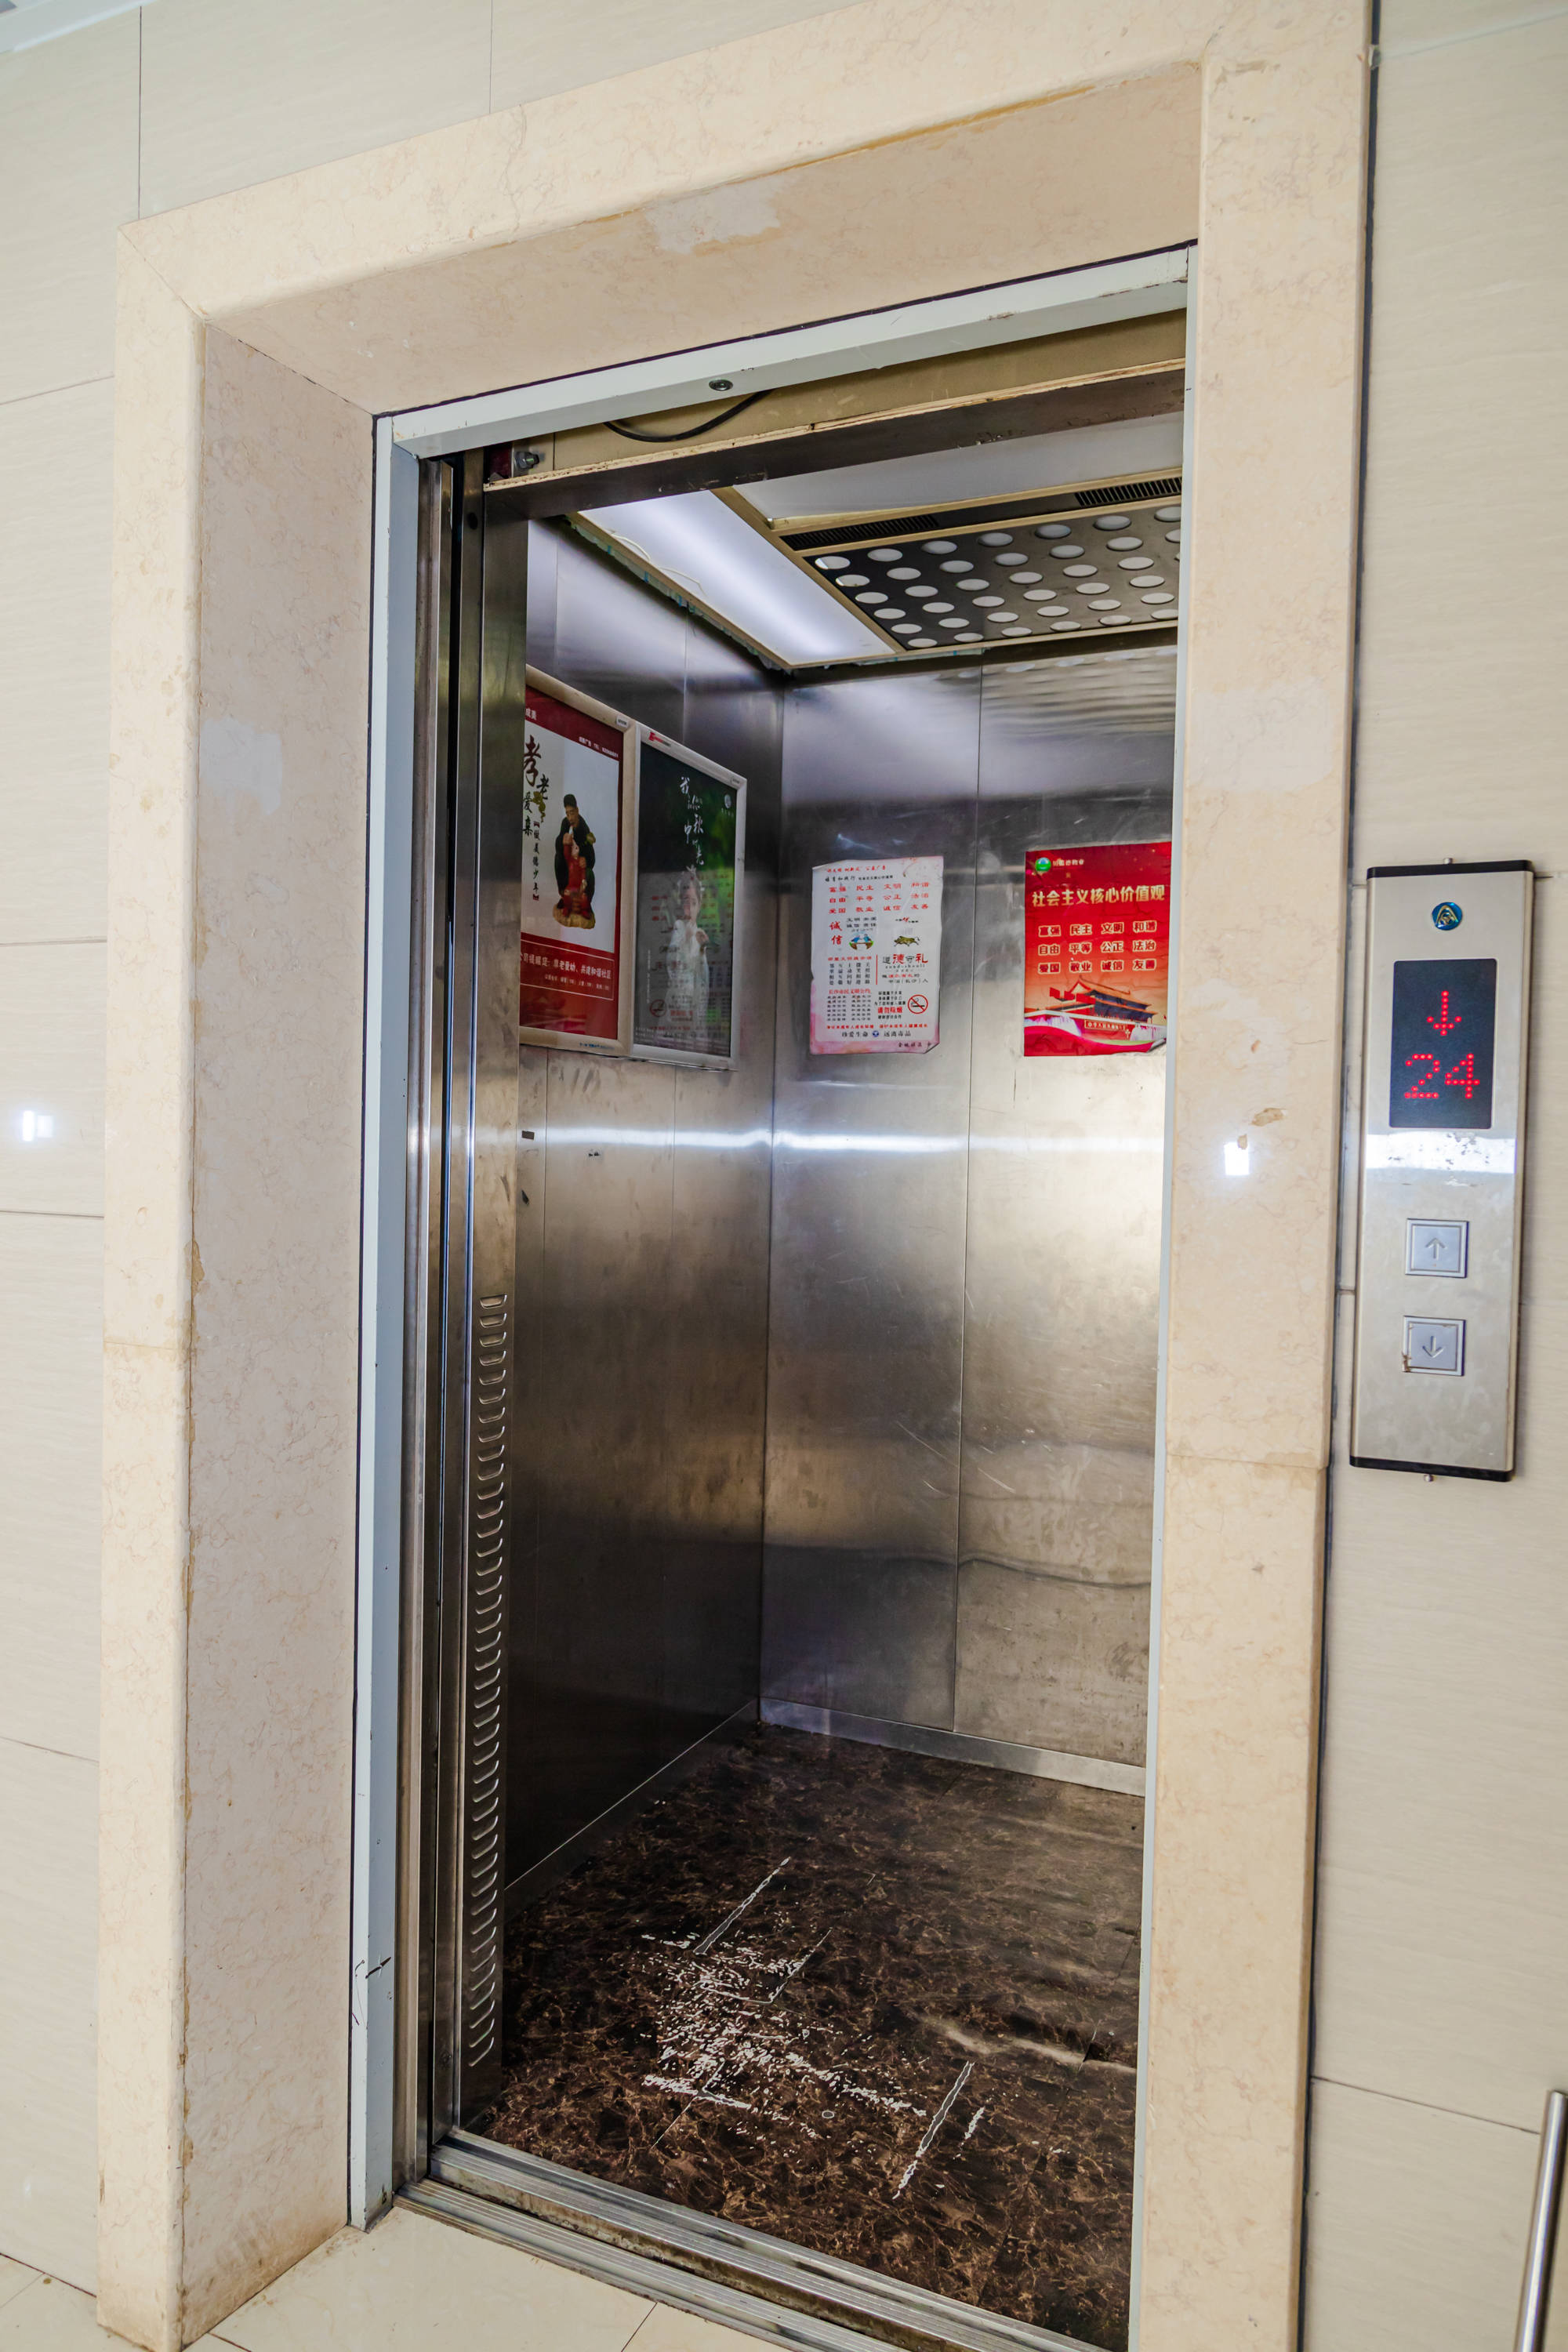 22层坠至13层!长沙市民经历"电梯惊魂,腿都吓软了,此前电梯多次掉层